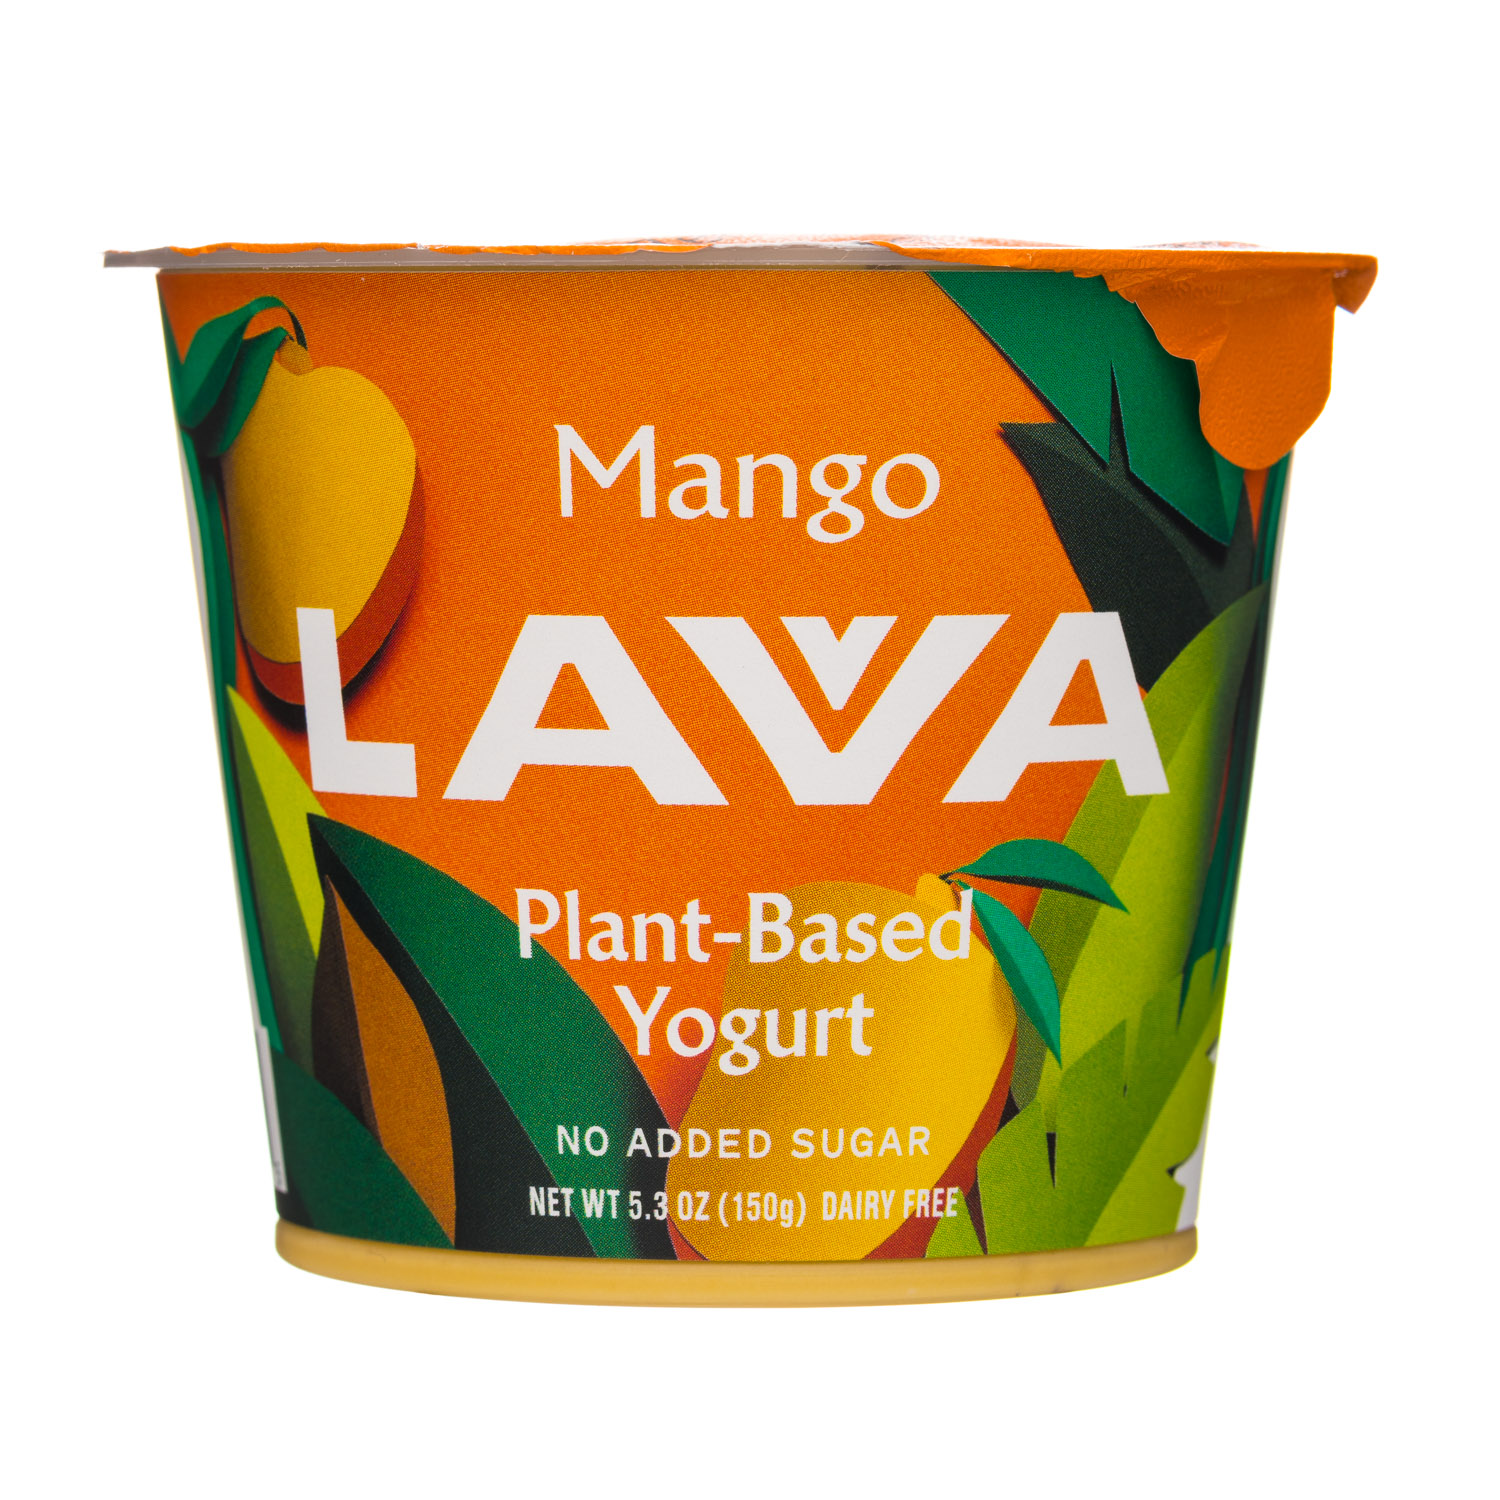 Mango (2019)